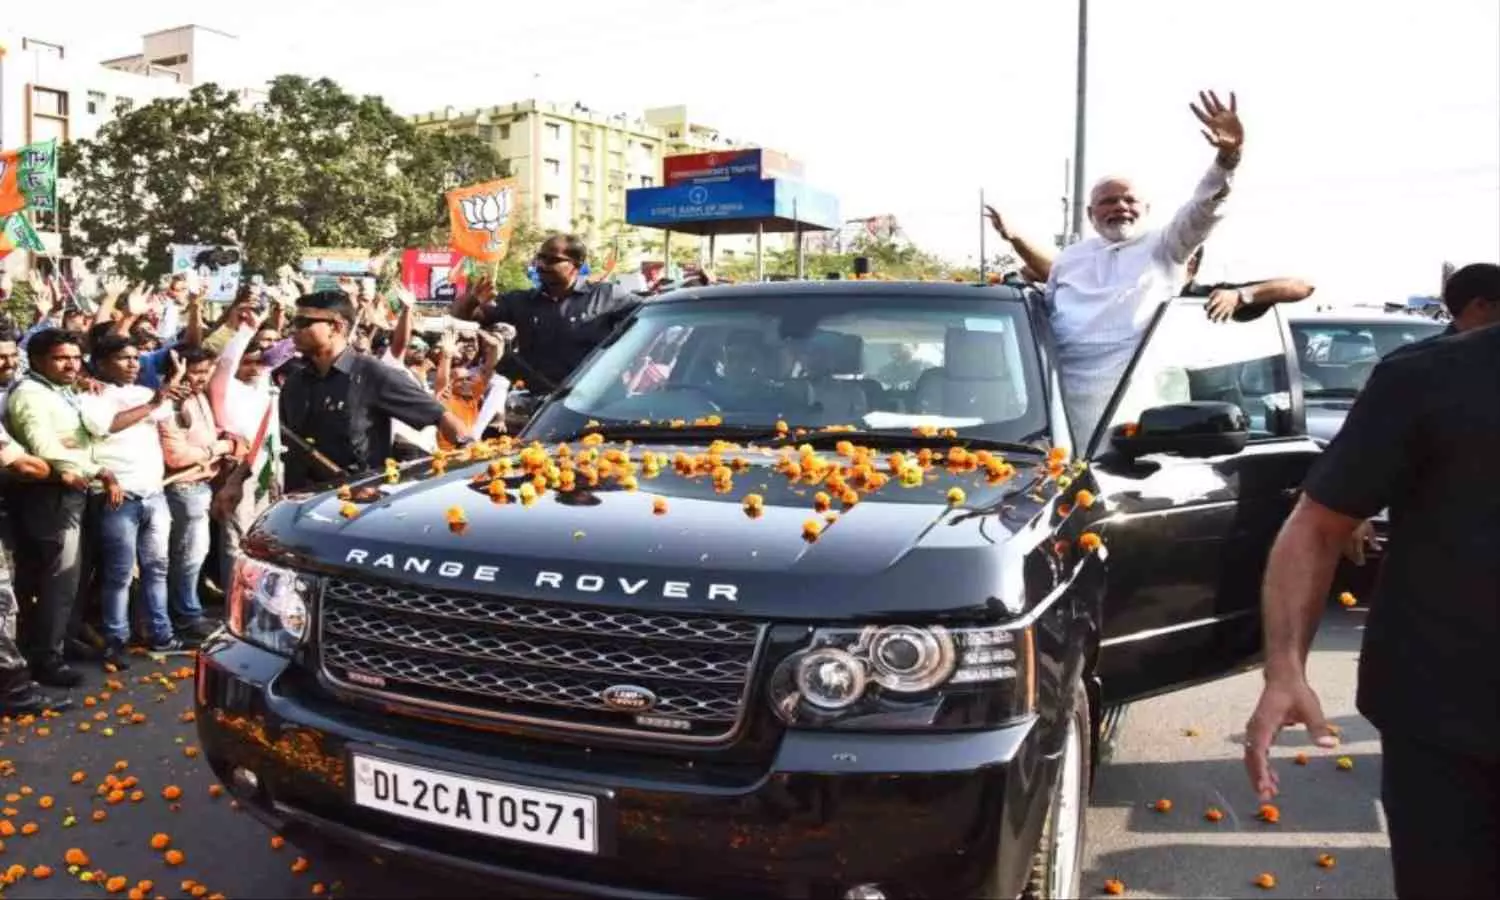 PM Modi Car Collection: पीएम मोदी के काफिले में एक से बढ़कर एक गाड़ियां, महिंद्रा से लेकर मर्सिडीज तक शामिल